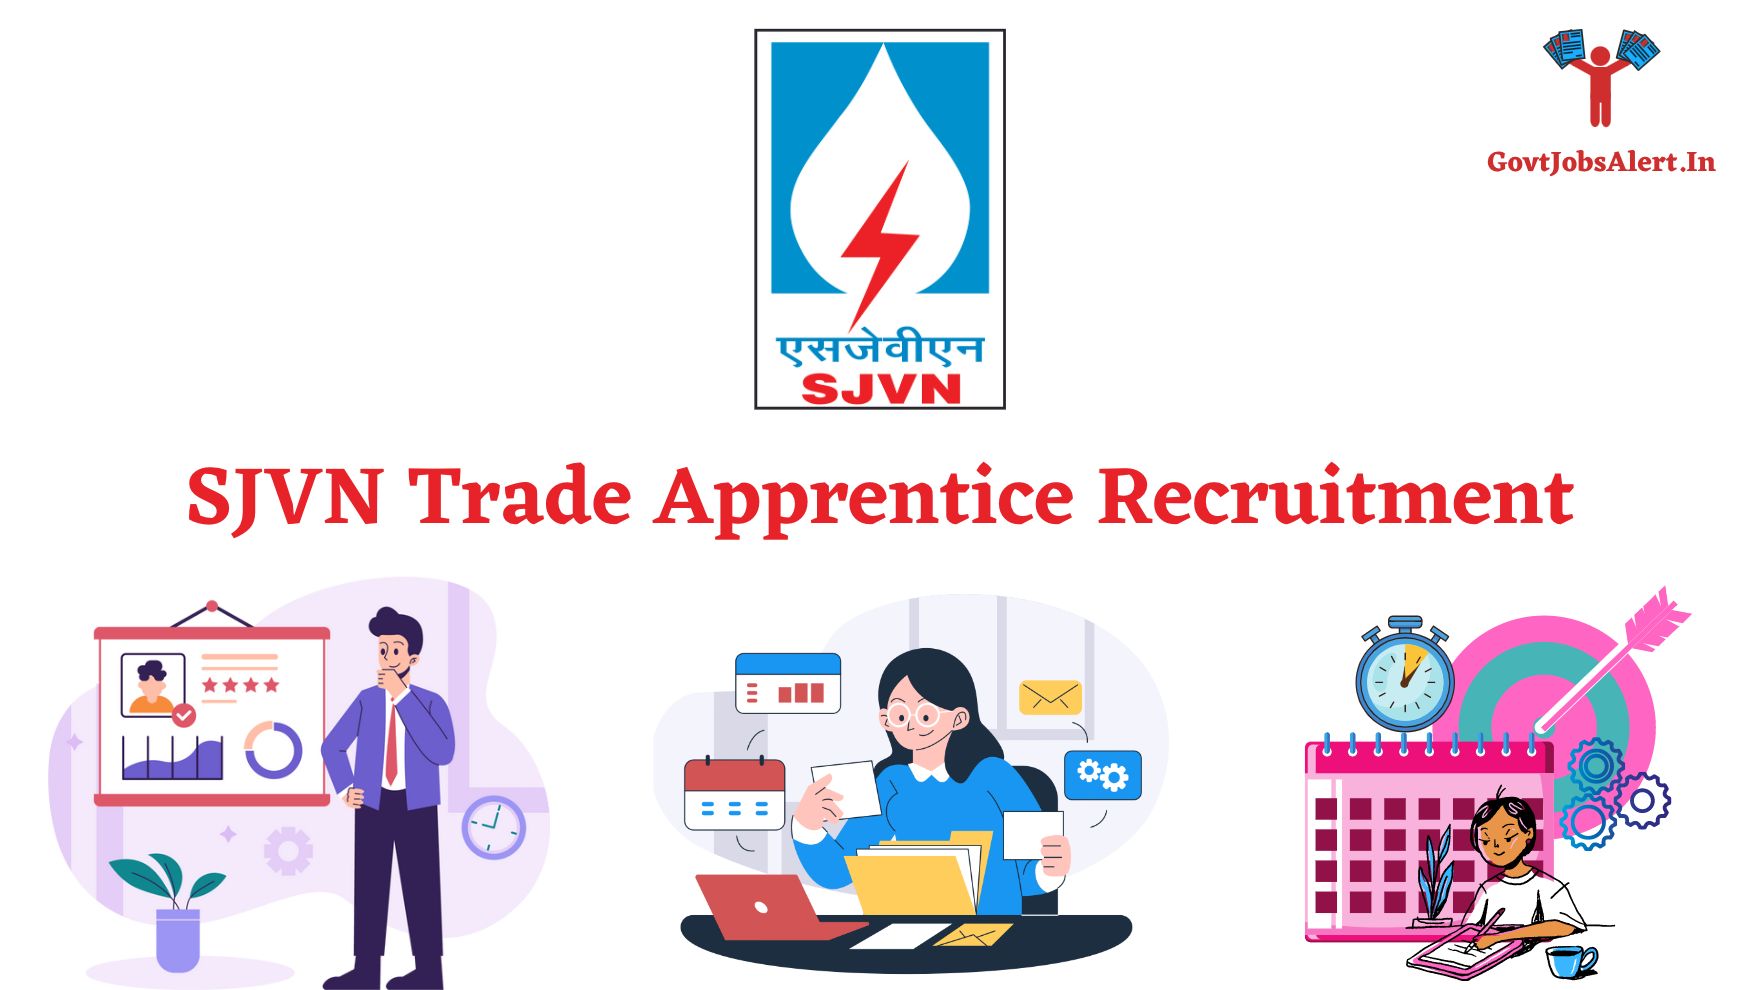 SJVN Trade Apprentice Recruitment